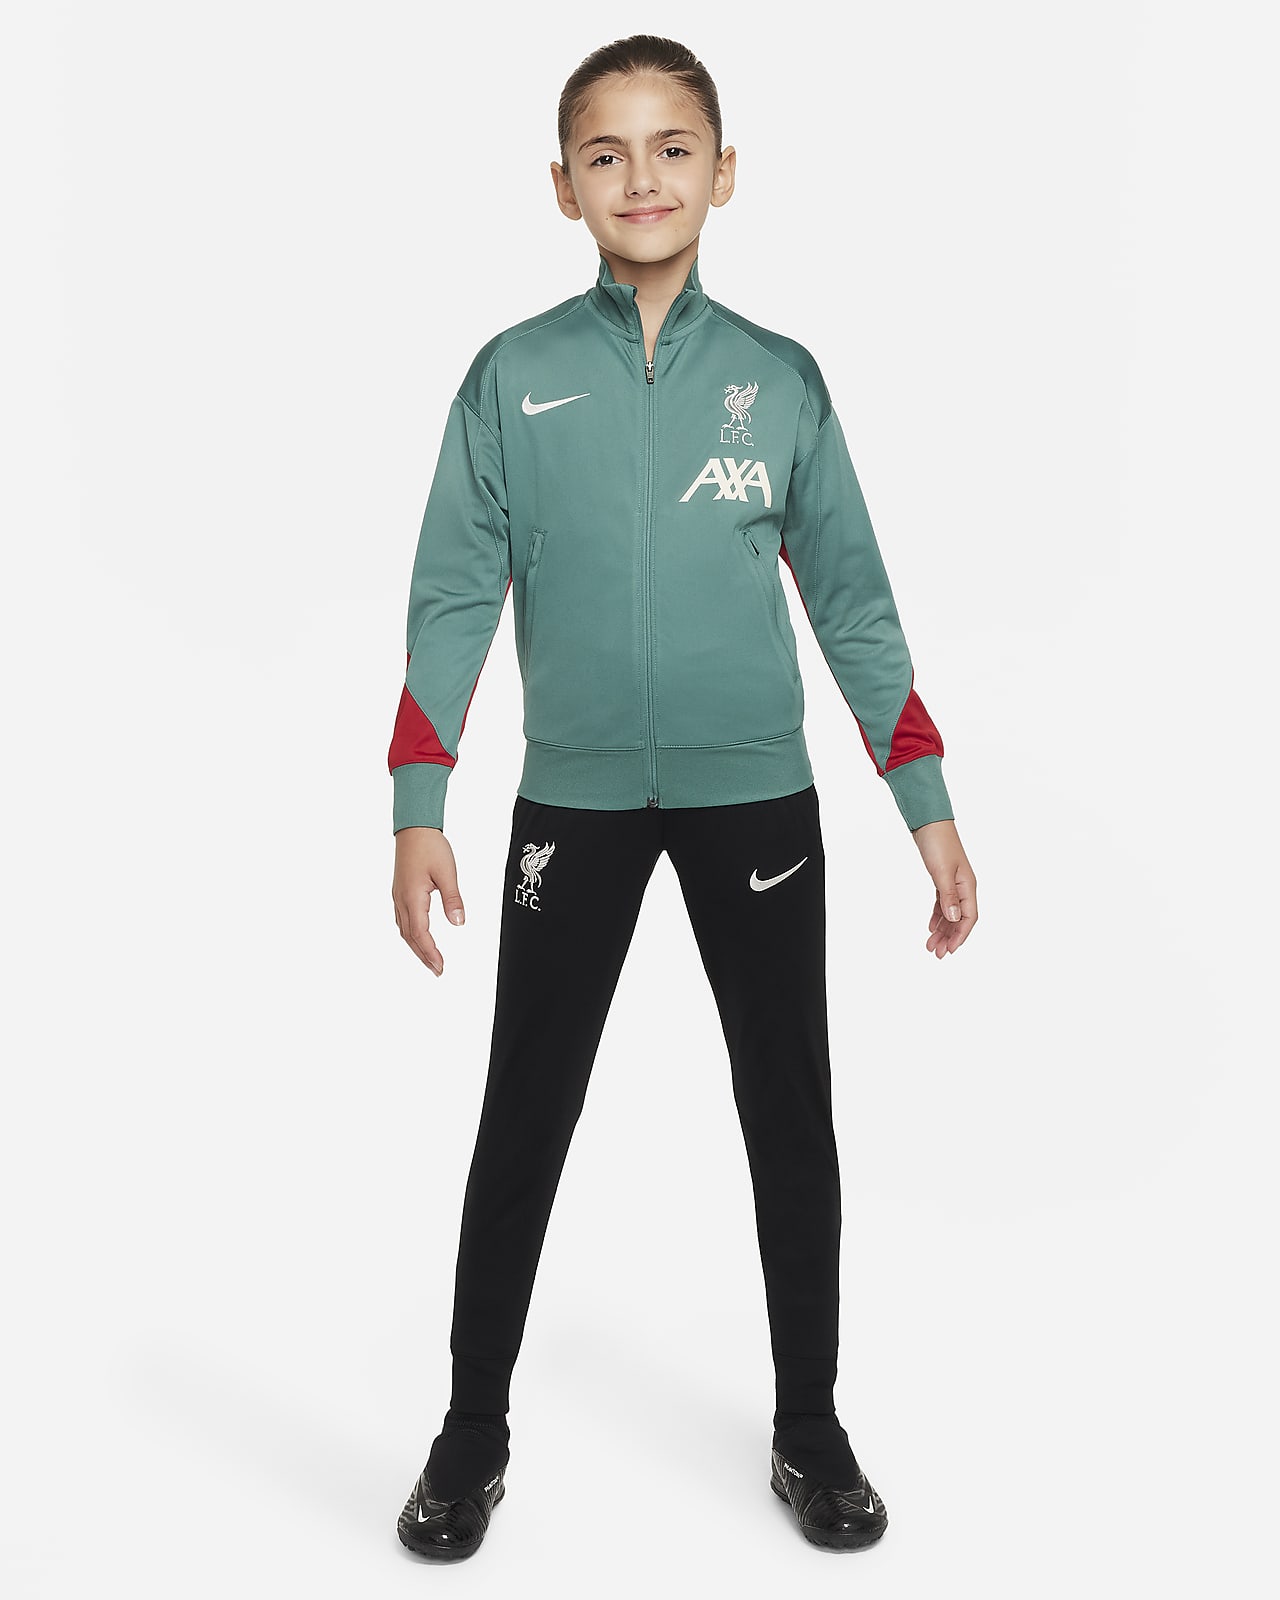 Liverpool F.C. Strike Older Kids' Nike Dri-FIT Football Knit Tracksuit